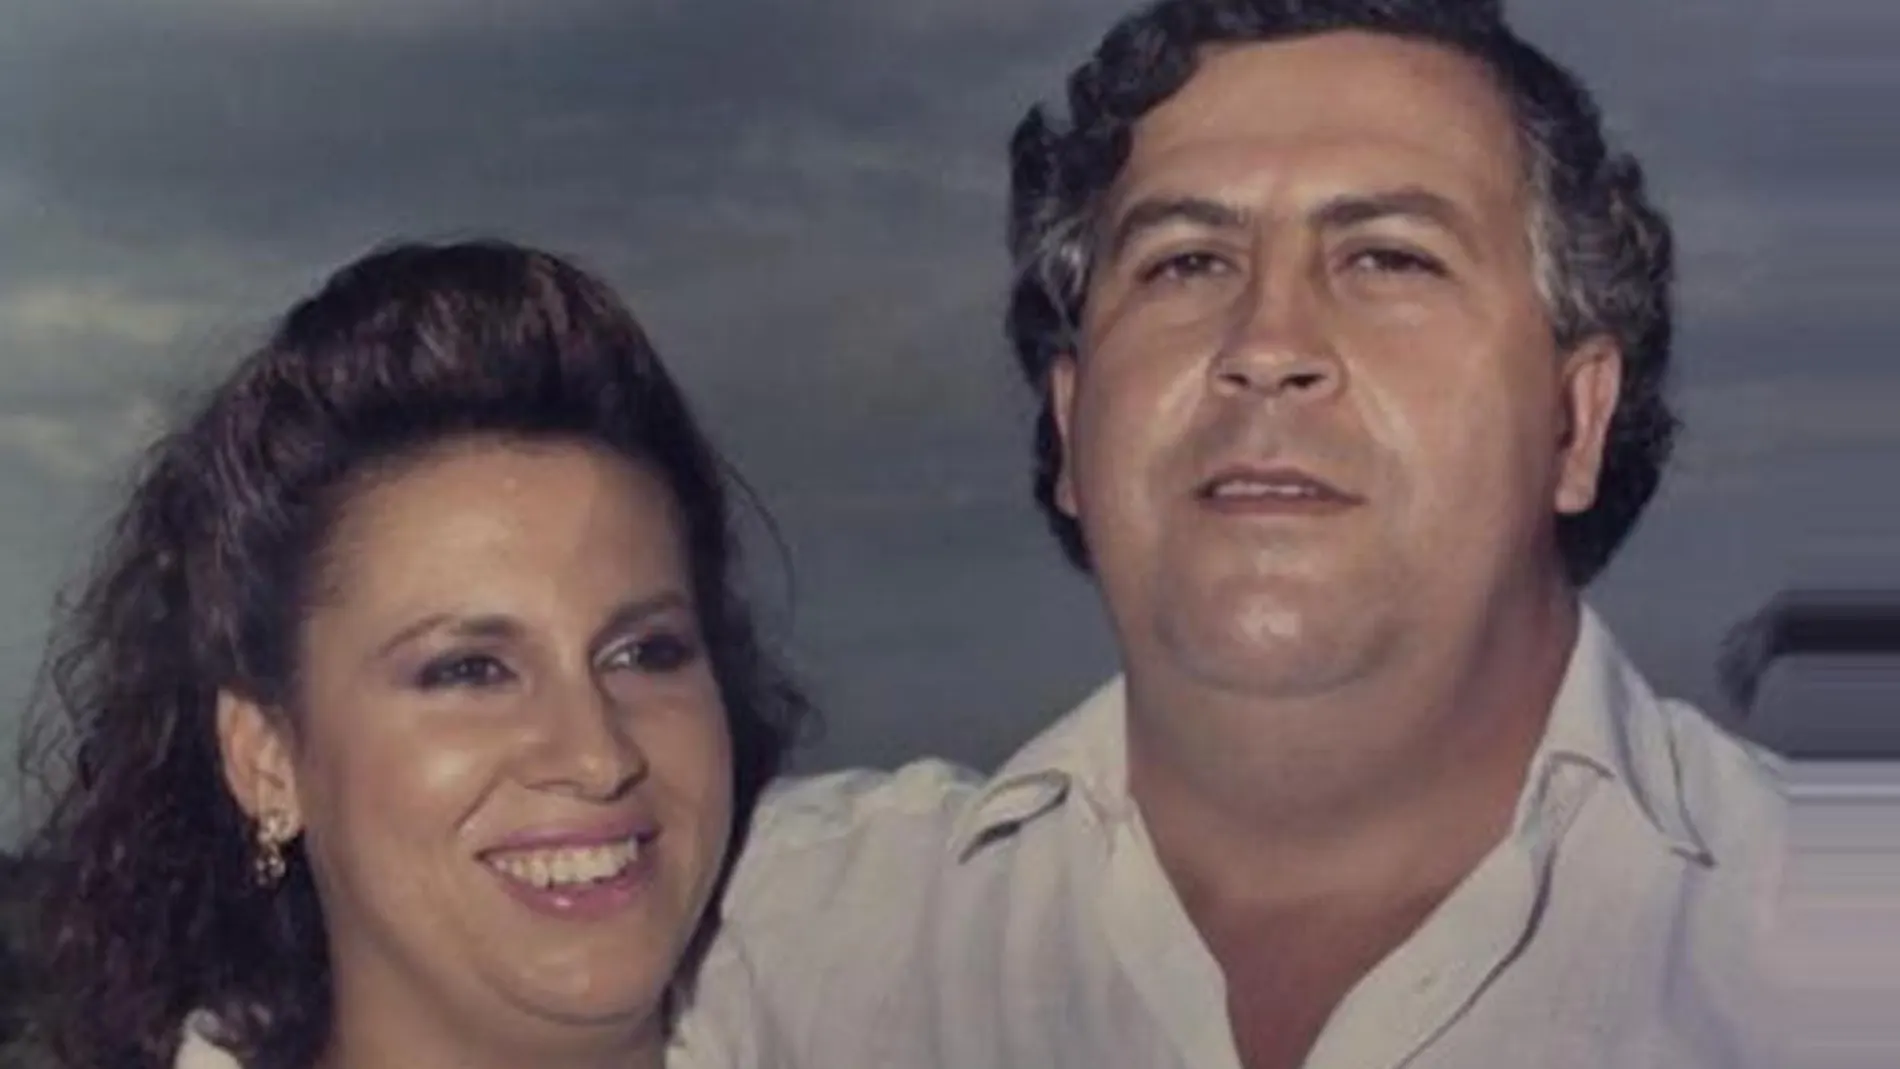 Griselda Blanco junto a Pablo Escobar, en una imagen de archivo